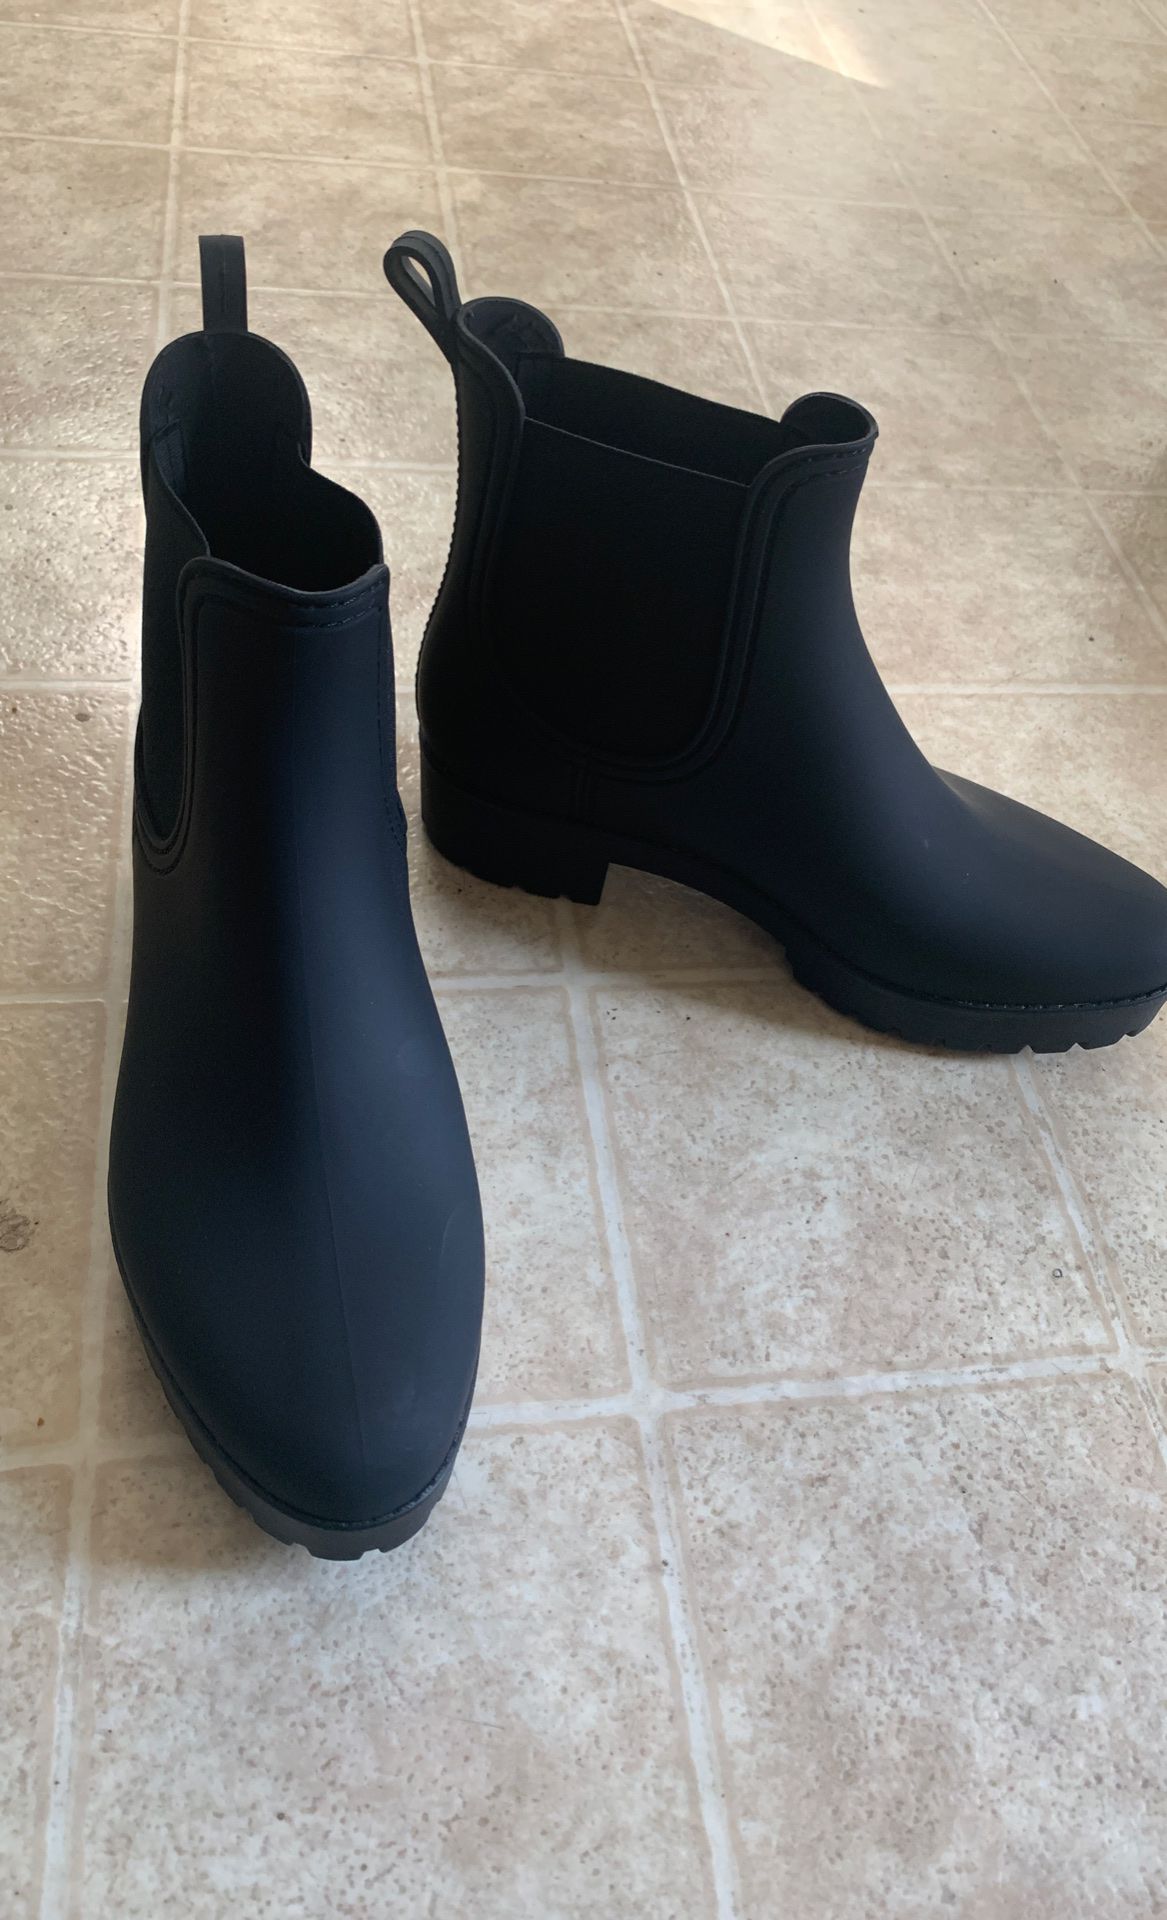 Black ankle rain boots, Size 10.5